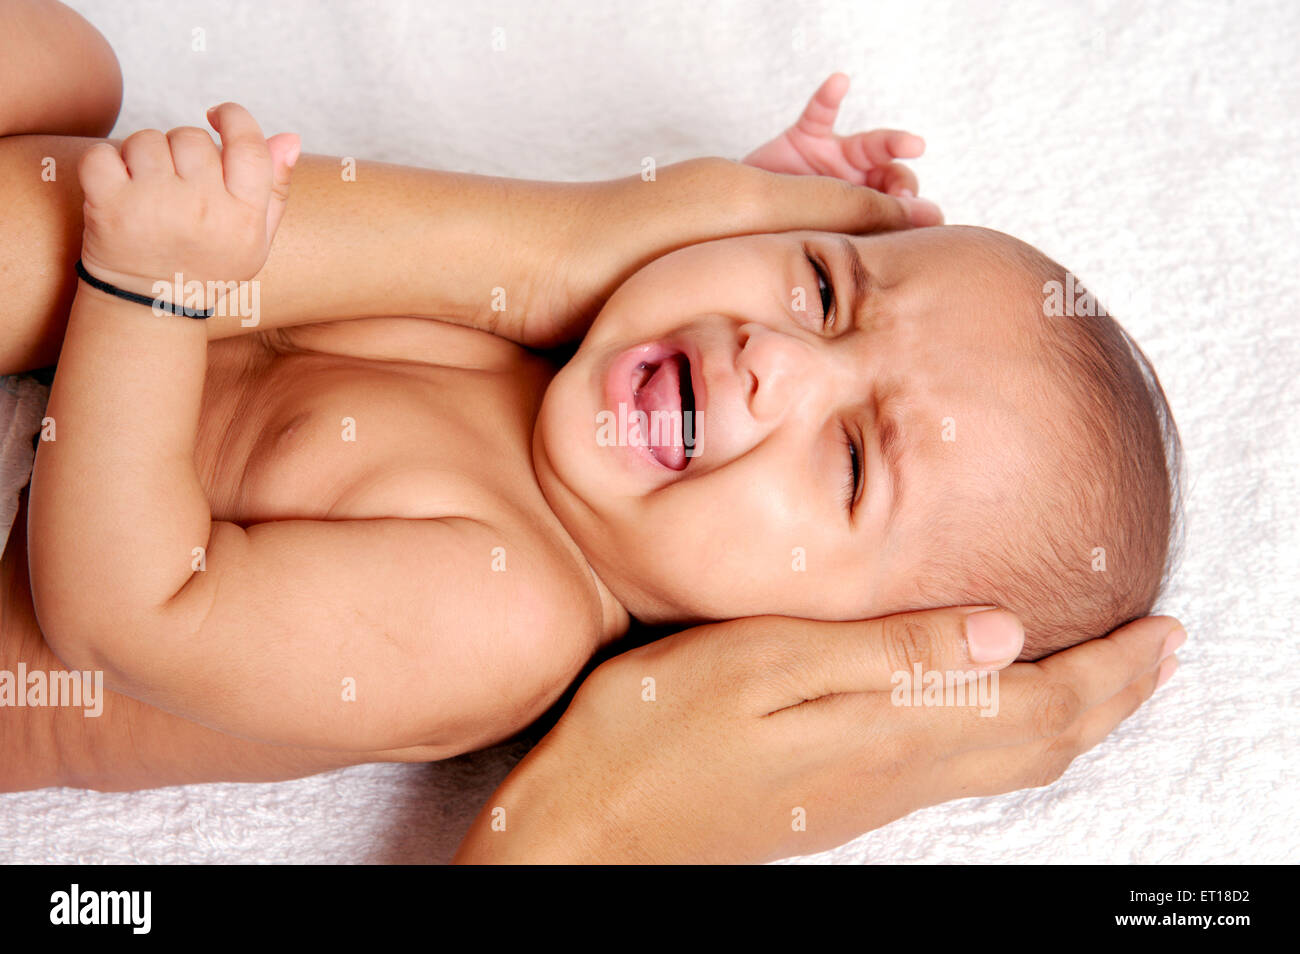 Indischen Baby Crying Kopf geschützt durch Mütter Hand Herr #736LA Herr #736 K Stockfoto